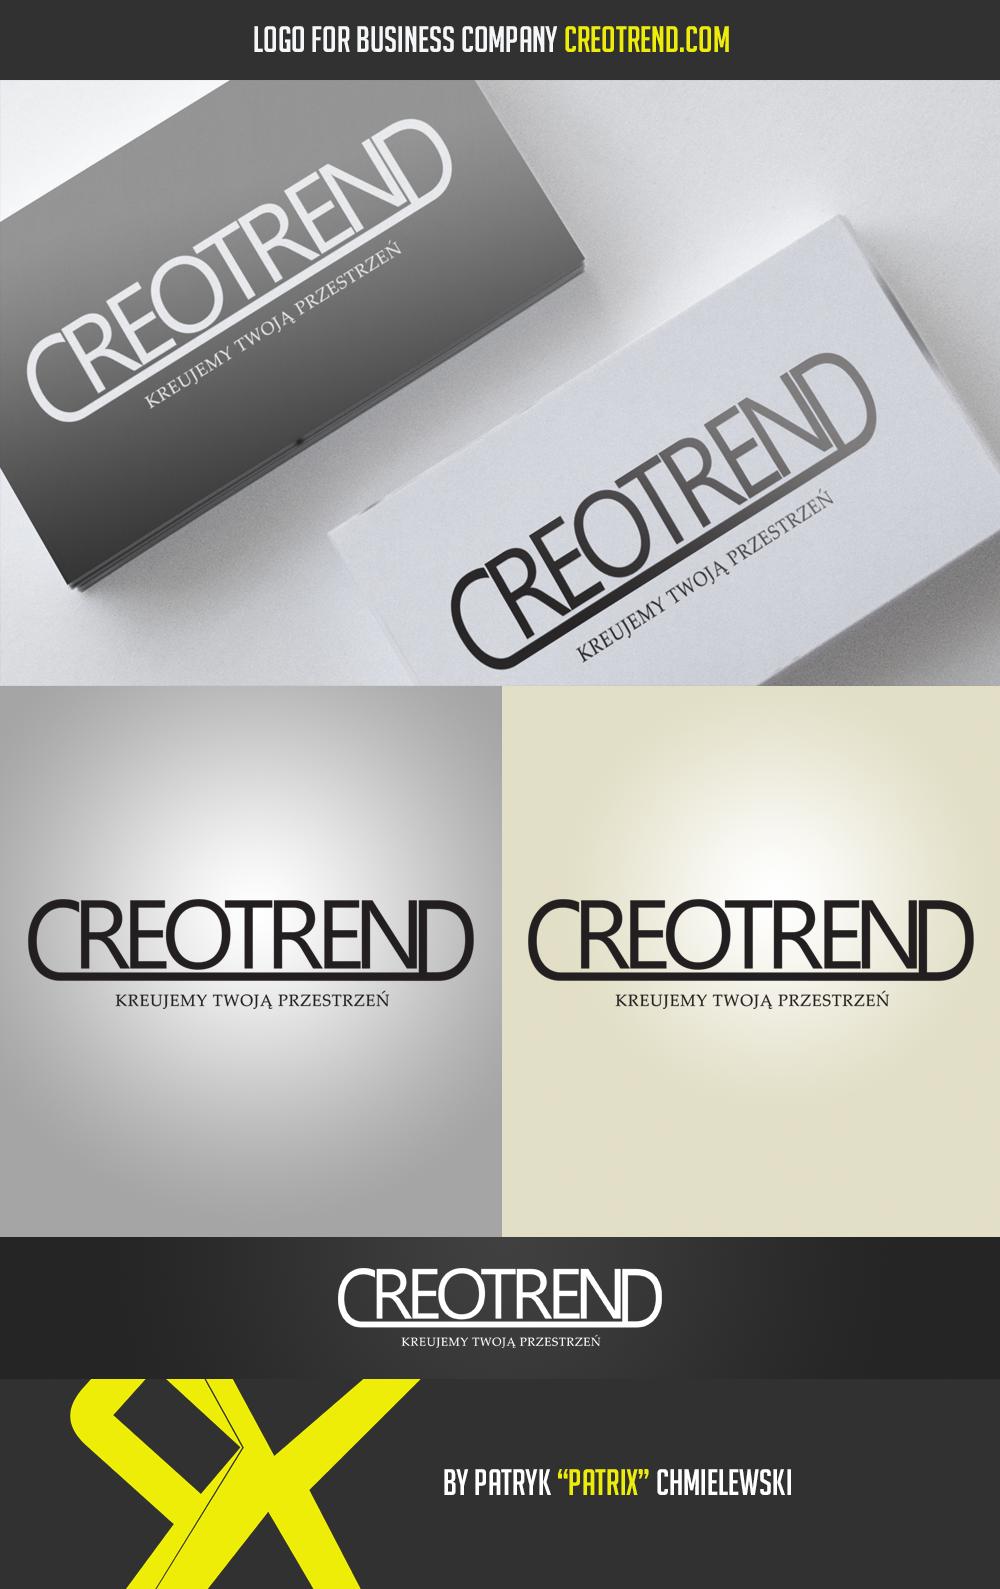 Creotrend - Logo by PatriX